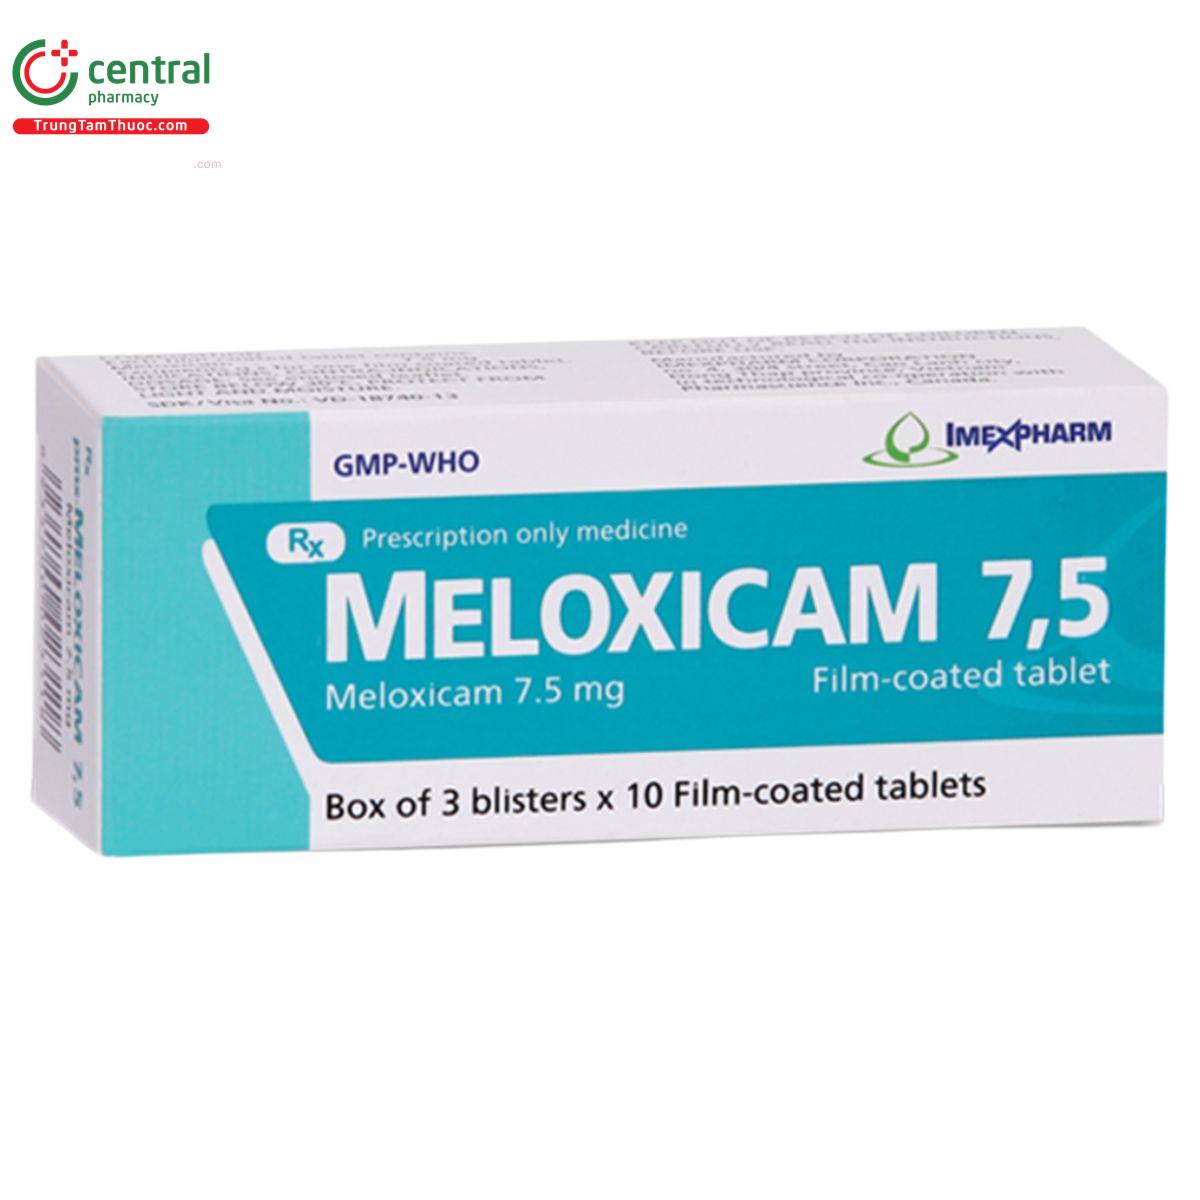 meloxicam 75mg imexpharm 1 I3012